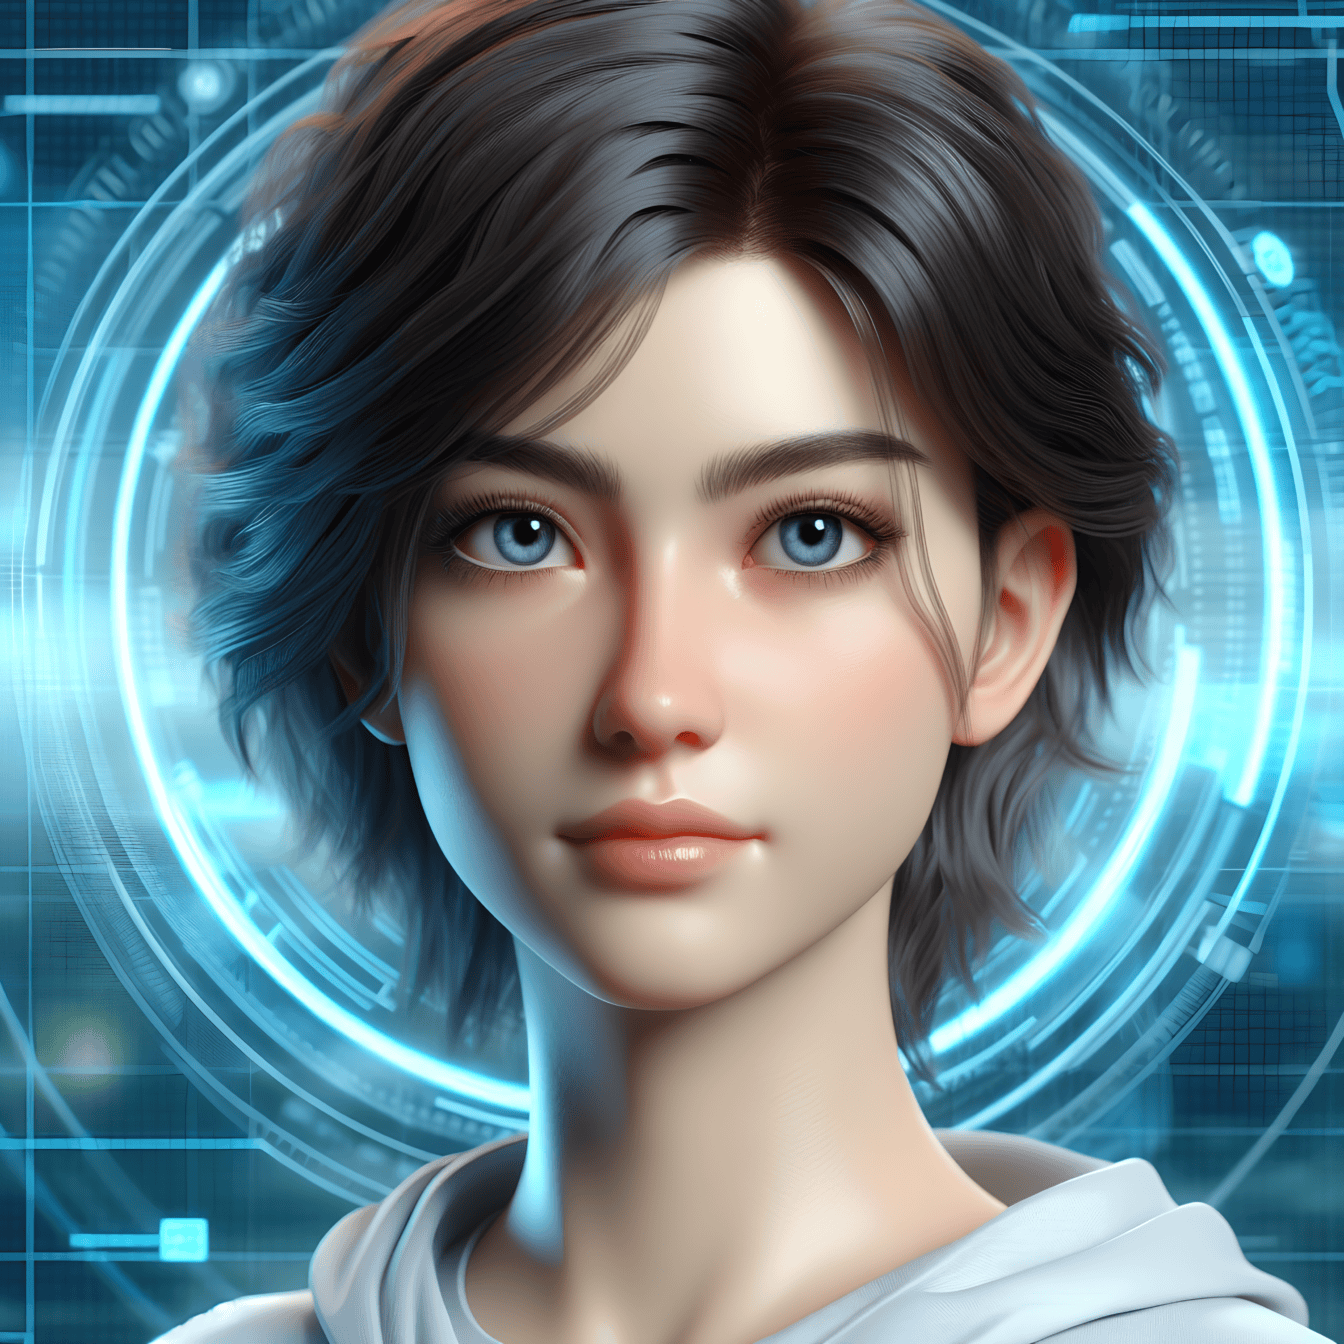 Portret digital al unei tinere cu păr scurt și ochi albaștri în realitatea virtuală